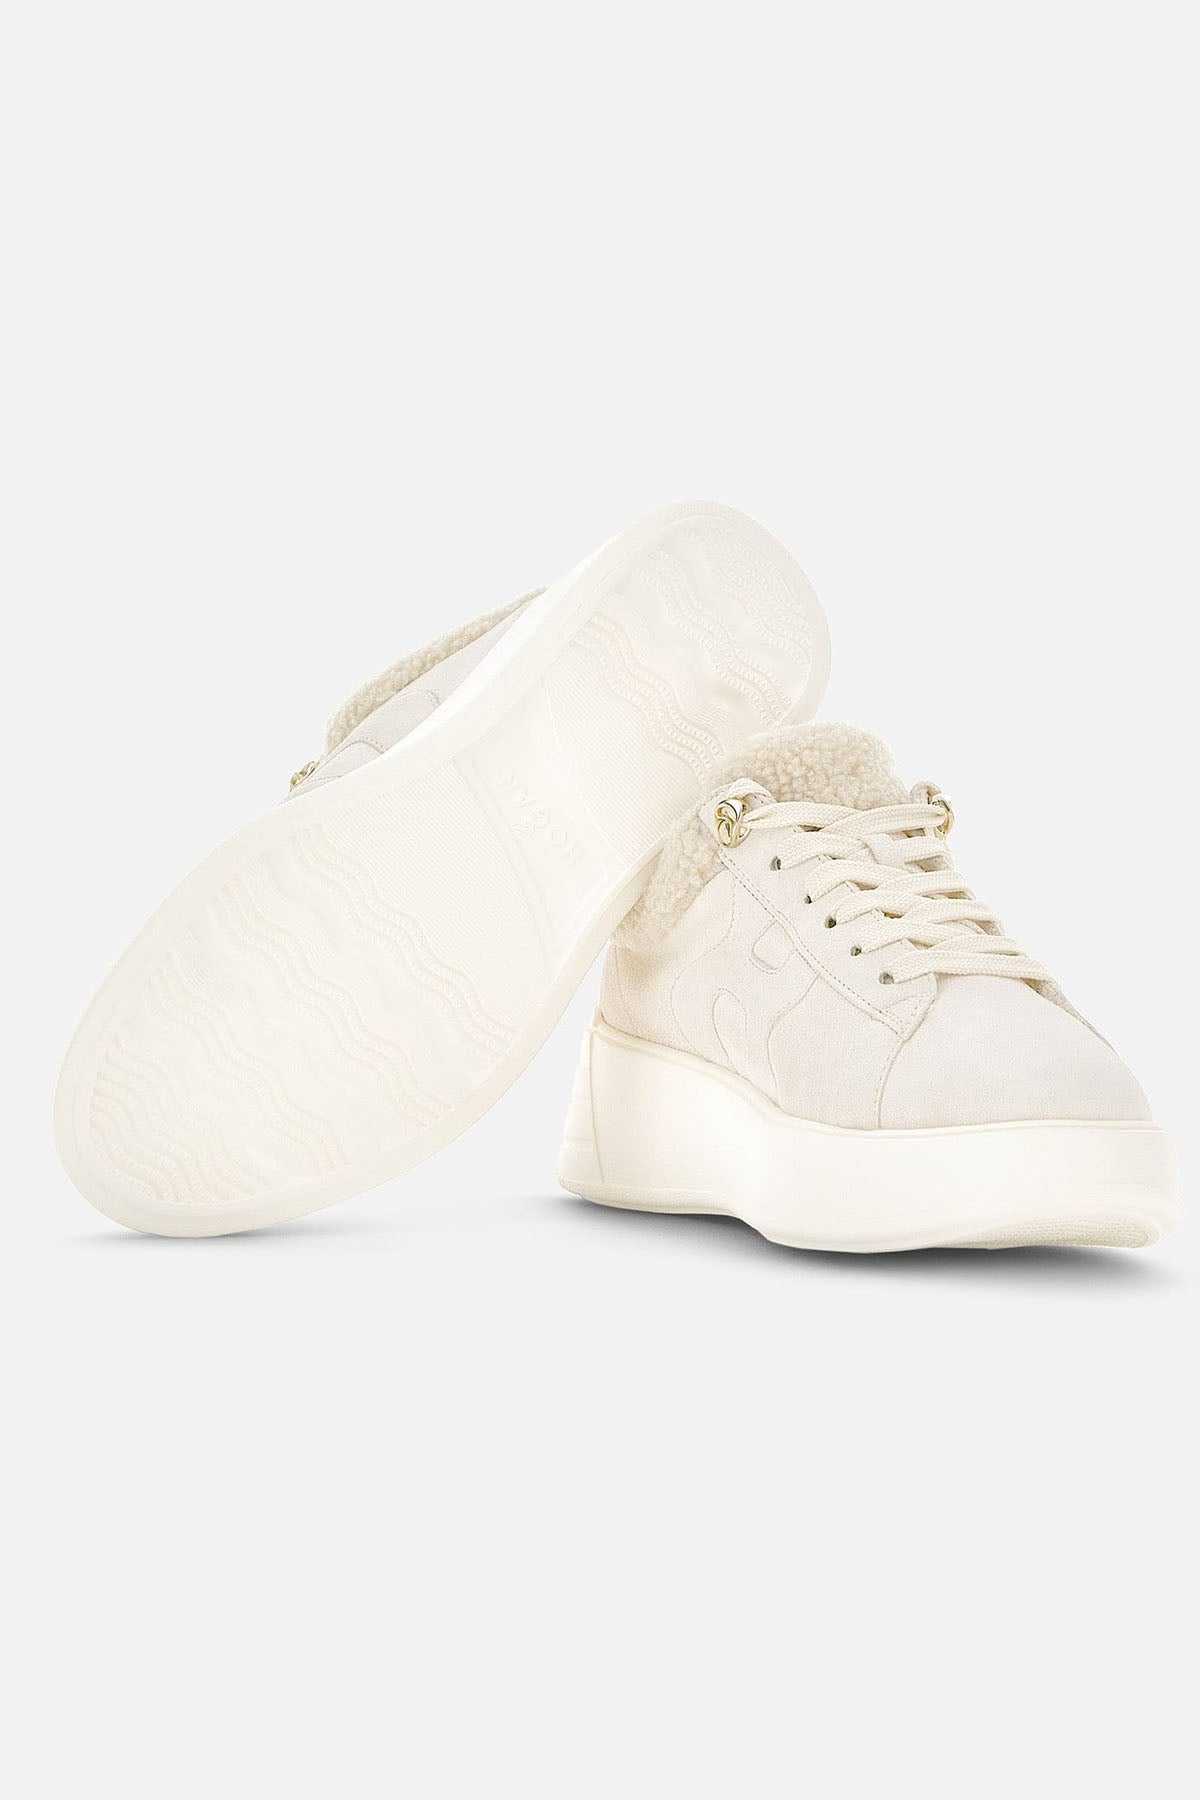 Hogan Rebel H562 İçi Kürklü Süet Sneaker Ayakkabı-Libas Trendy Fashion Store